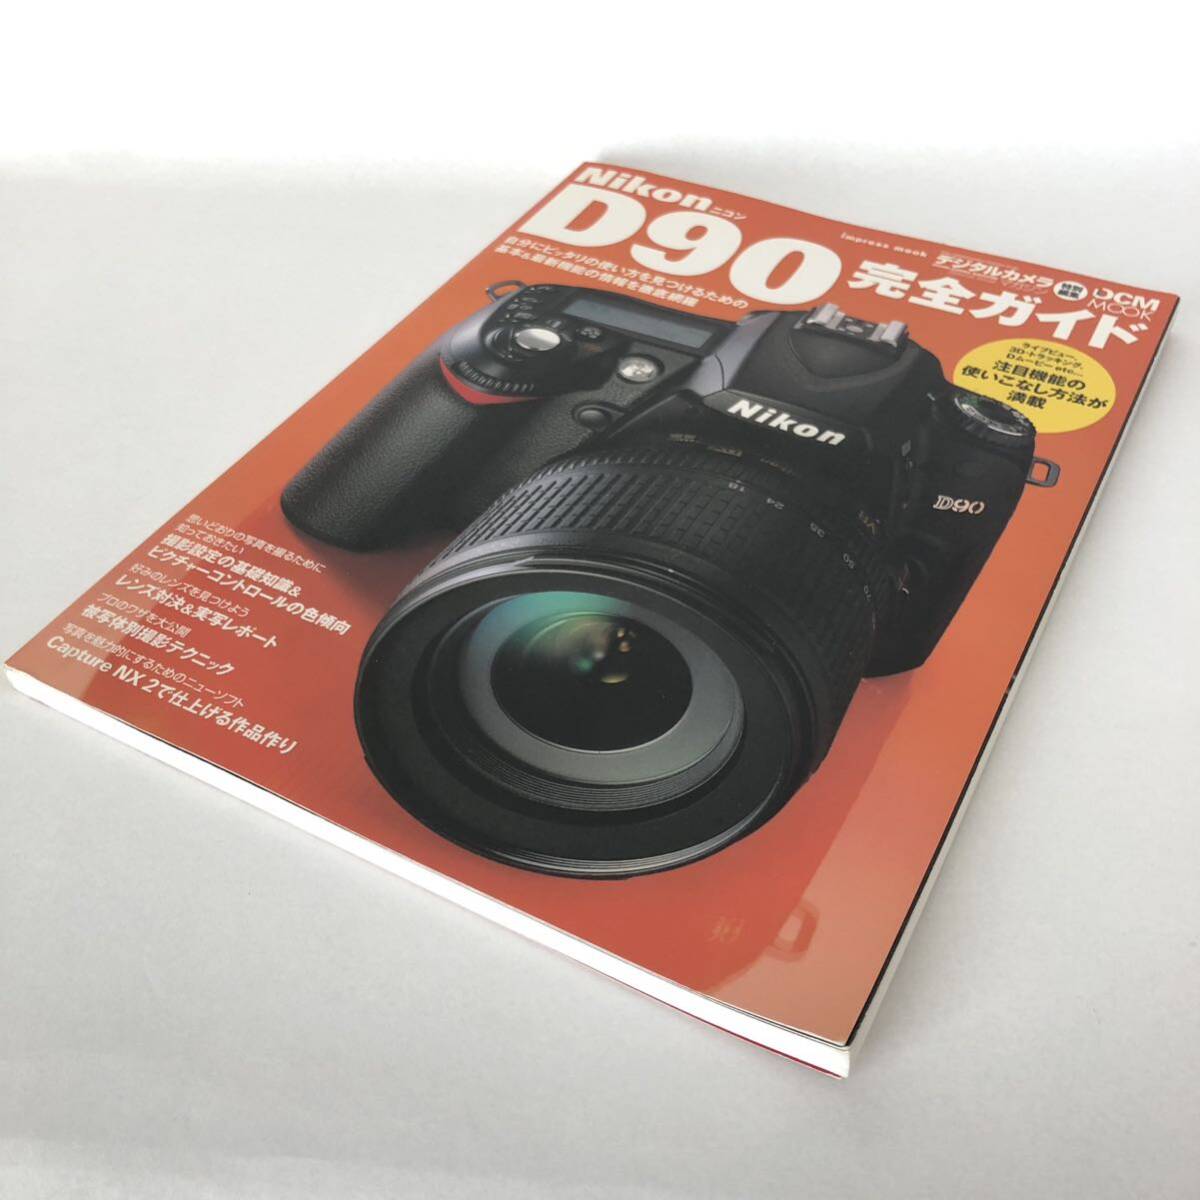 Nikon ニコン D90 完全ガイド 取扱説明書 [送料無料] マニュアル 使用説明書 取説 #M1062